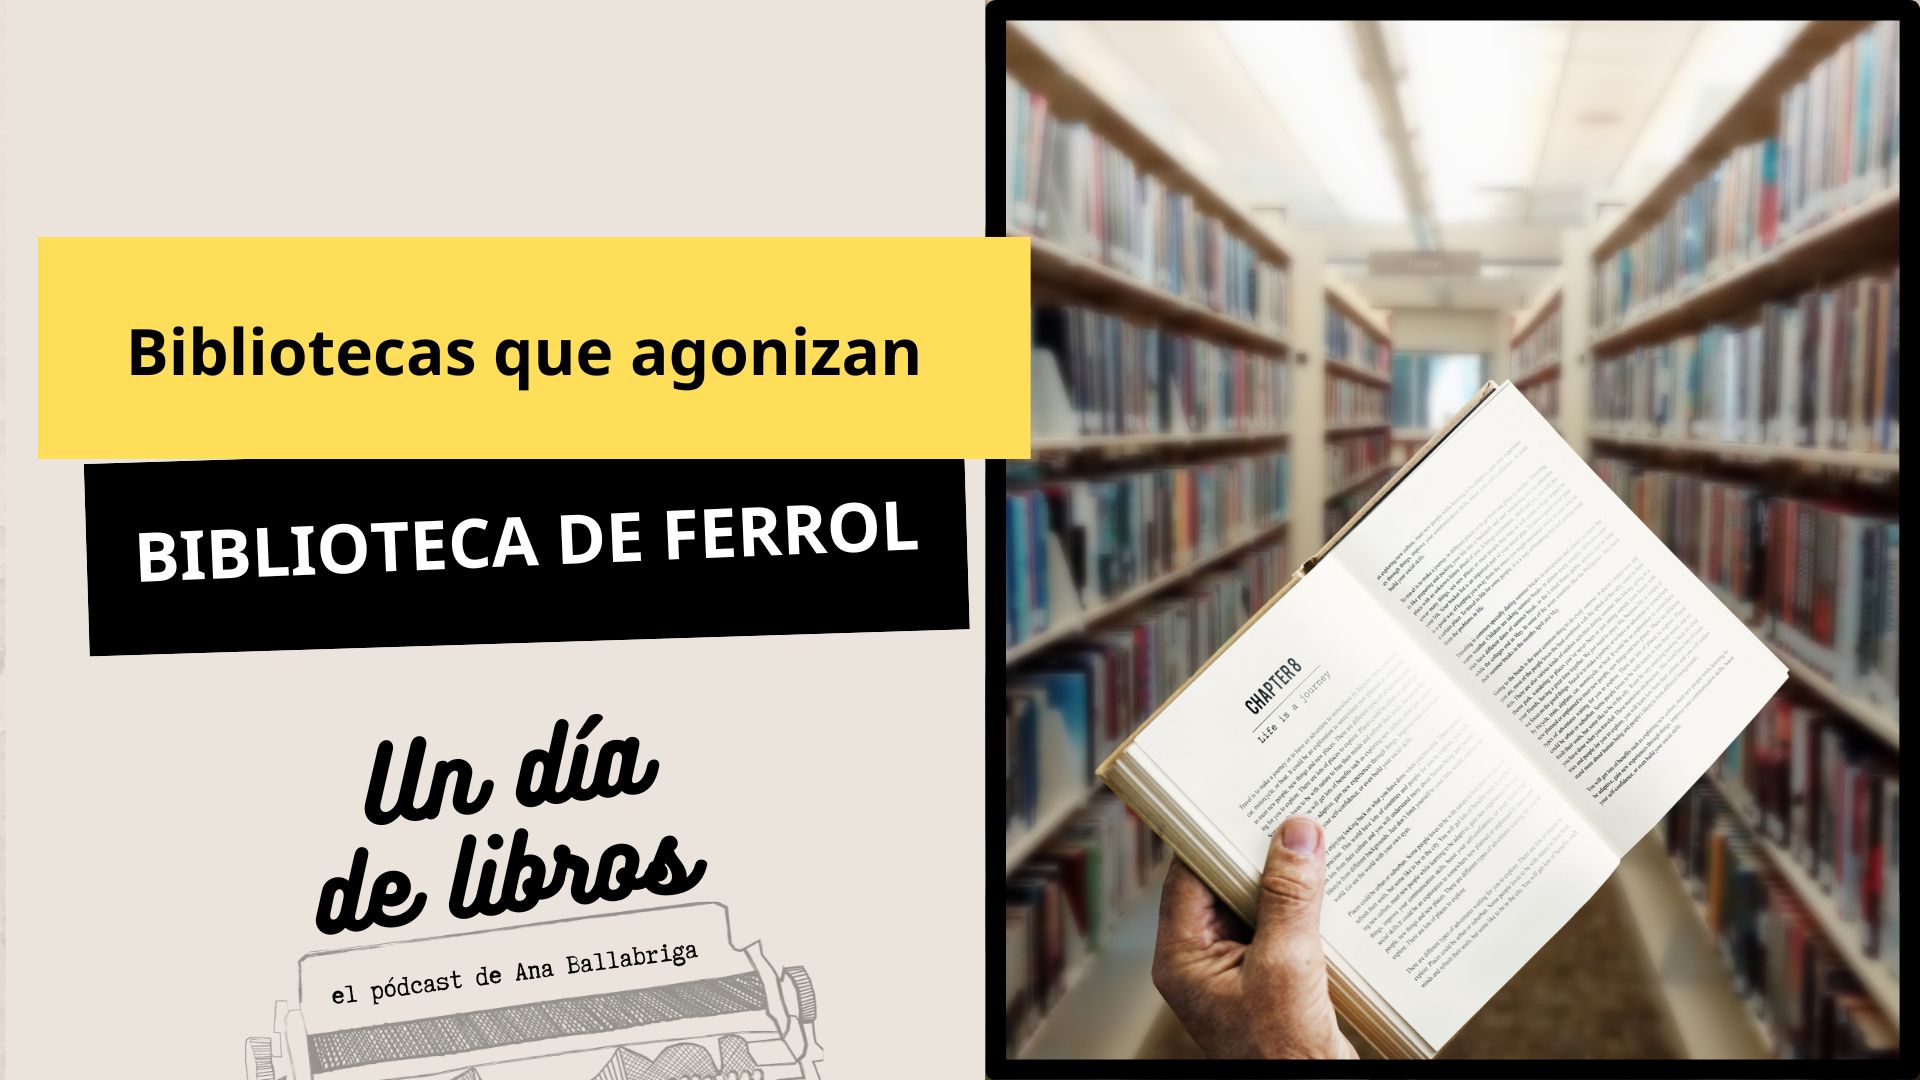 Ferrol, una biblioteca que agoniza